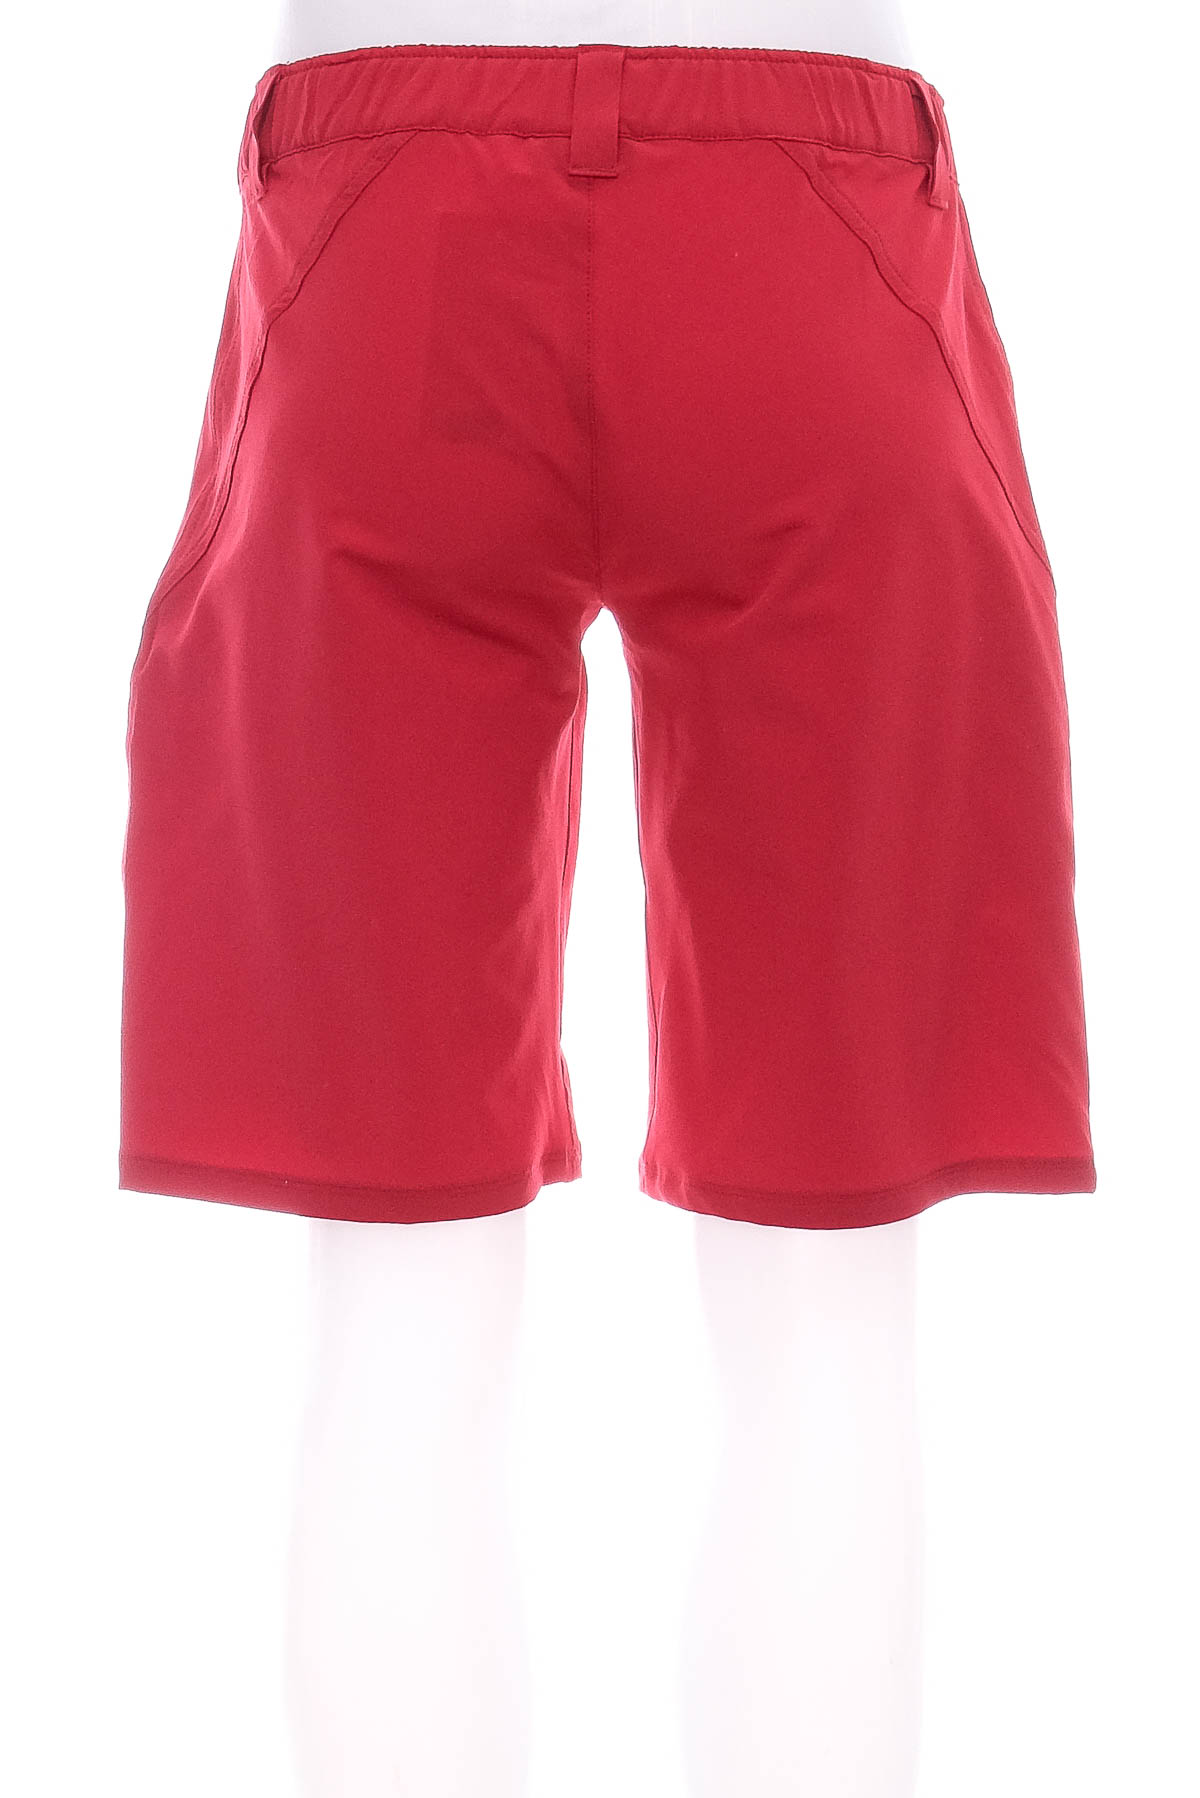 Female shorts - Colmar - 1